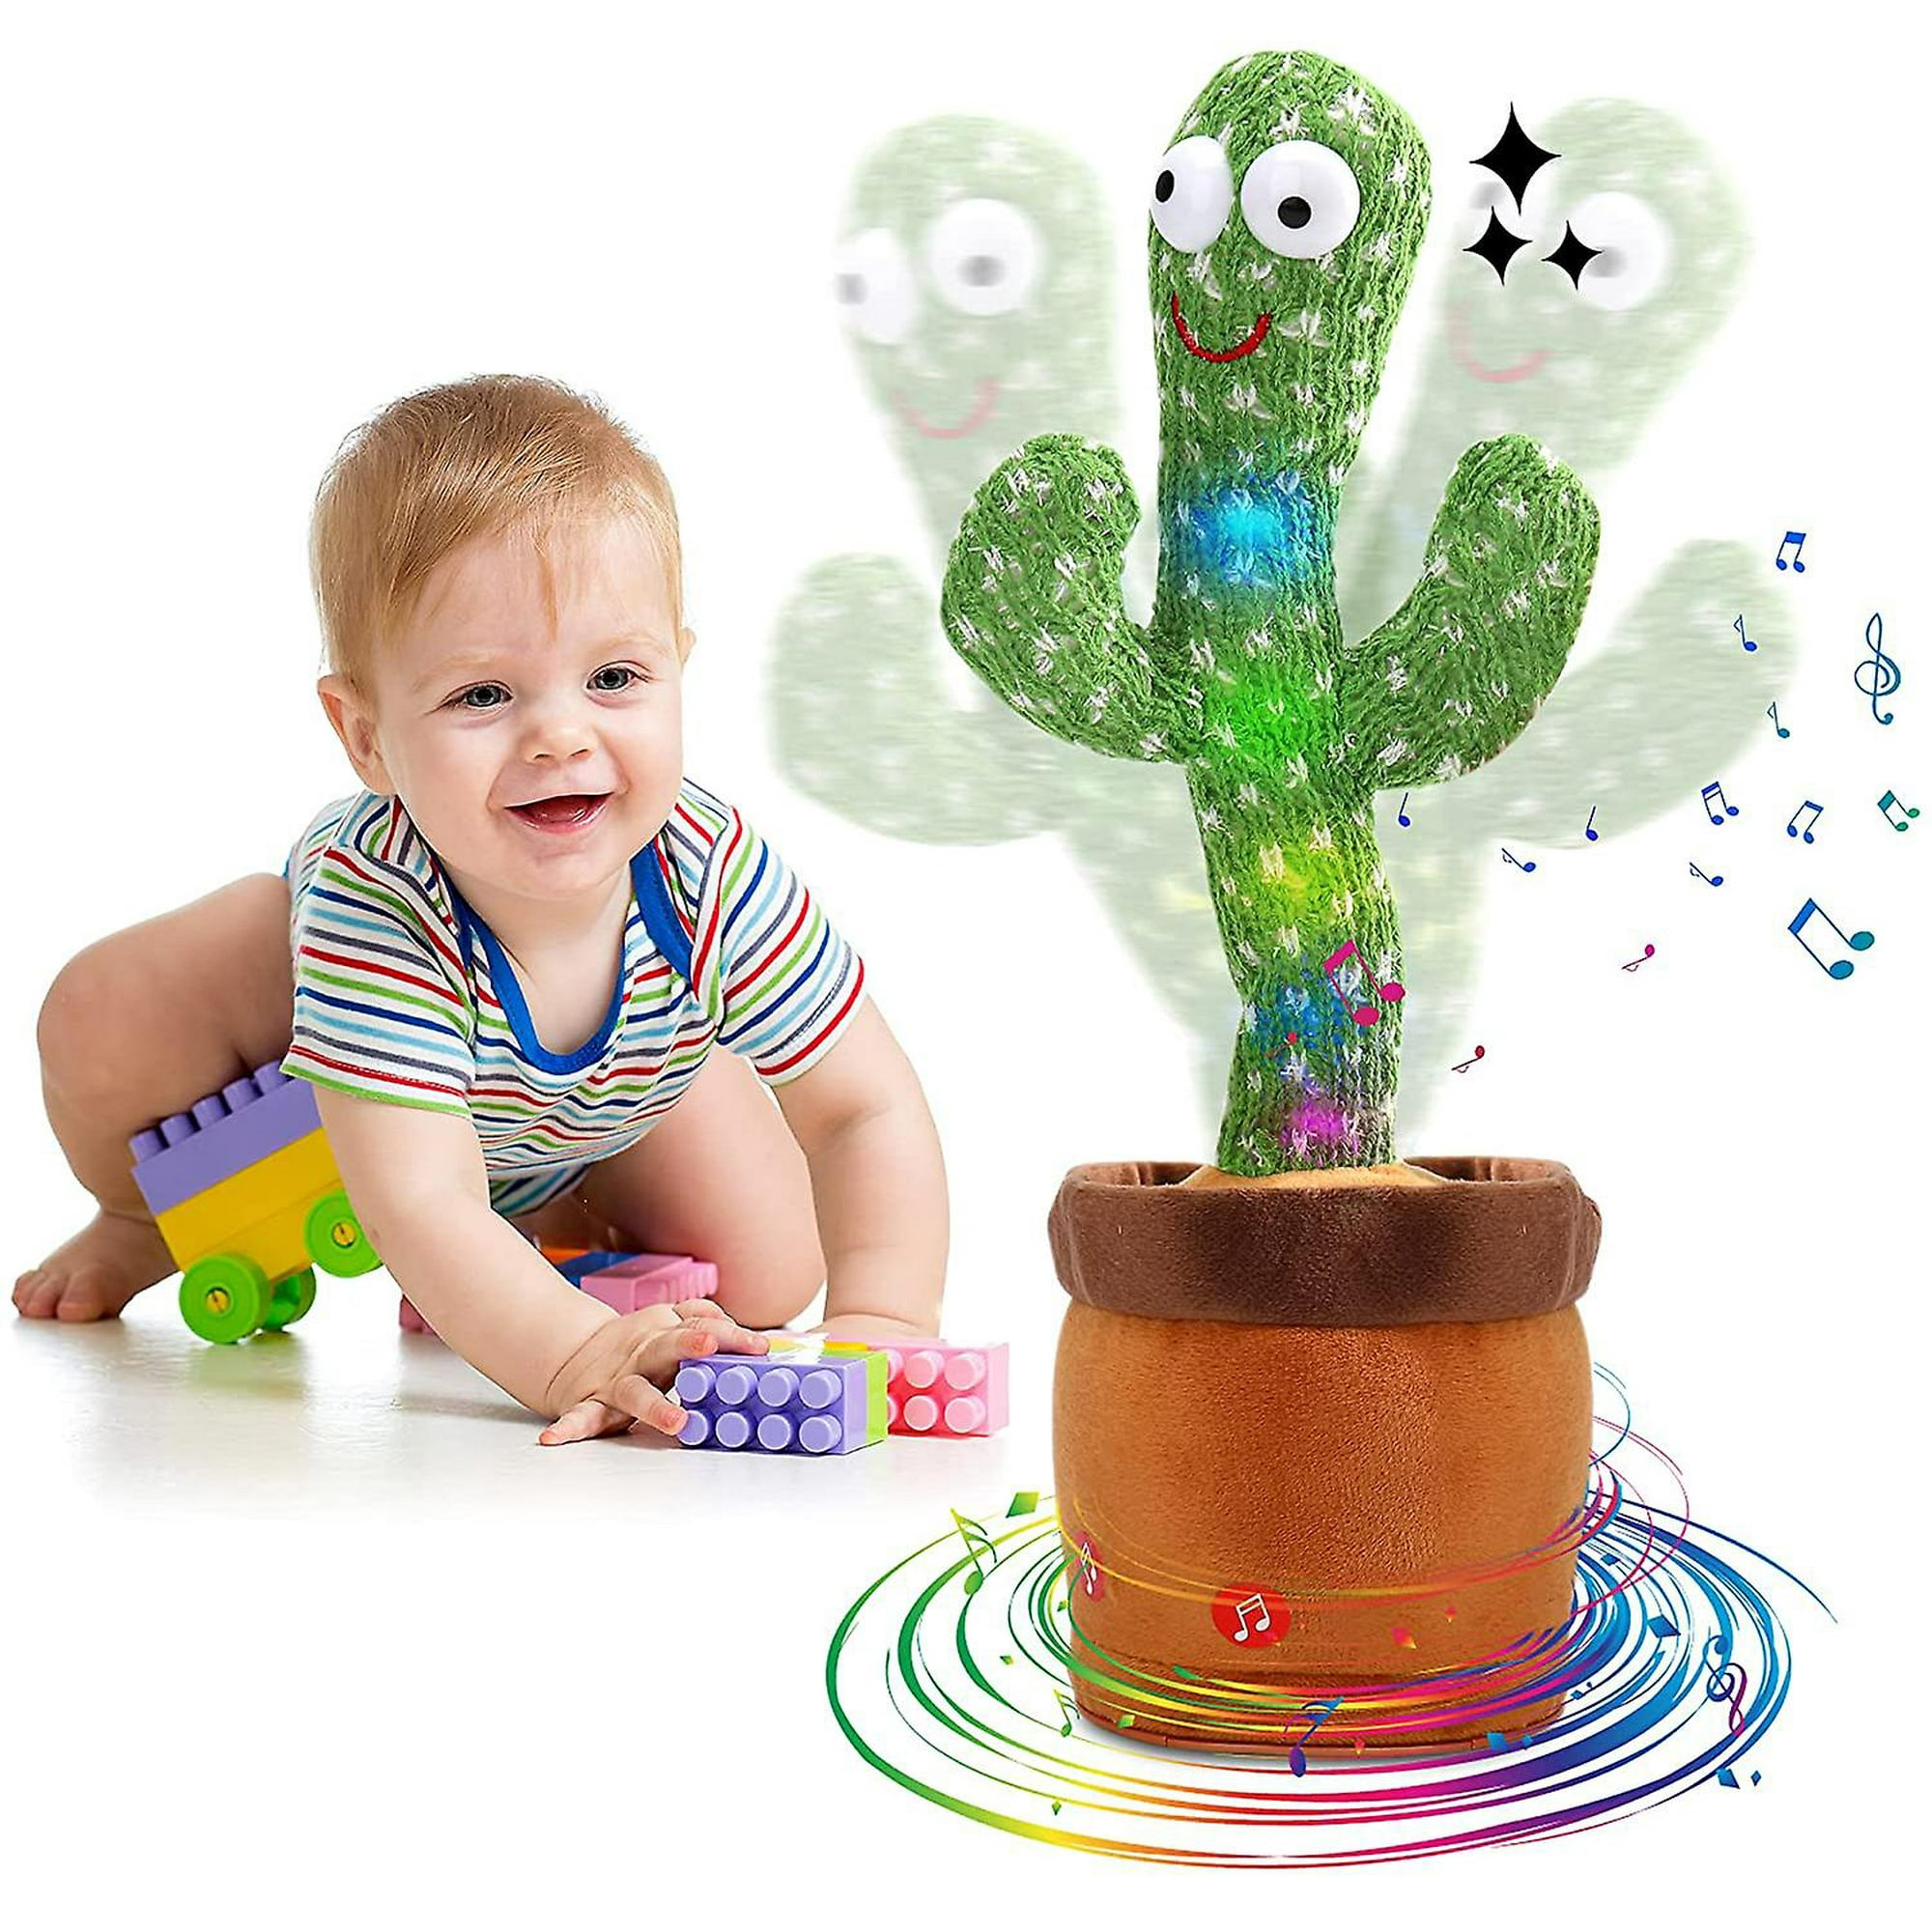 NP Cactus bailarín, juguete de cactus parlante, juguete que imita el cactus  bailarín para niños, repite y graba lo que dices, juguete de cactus para